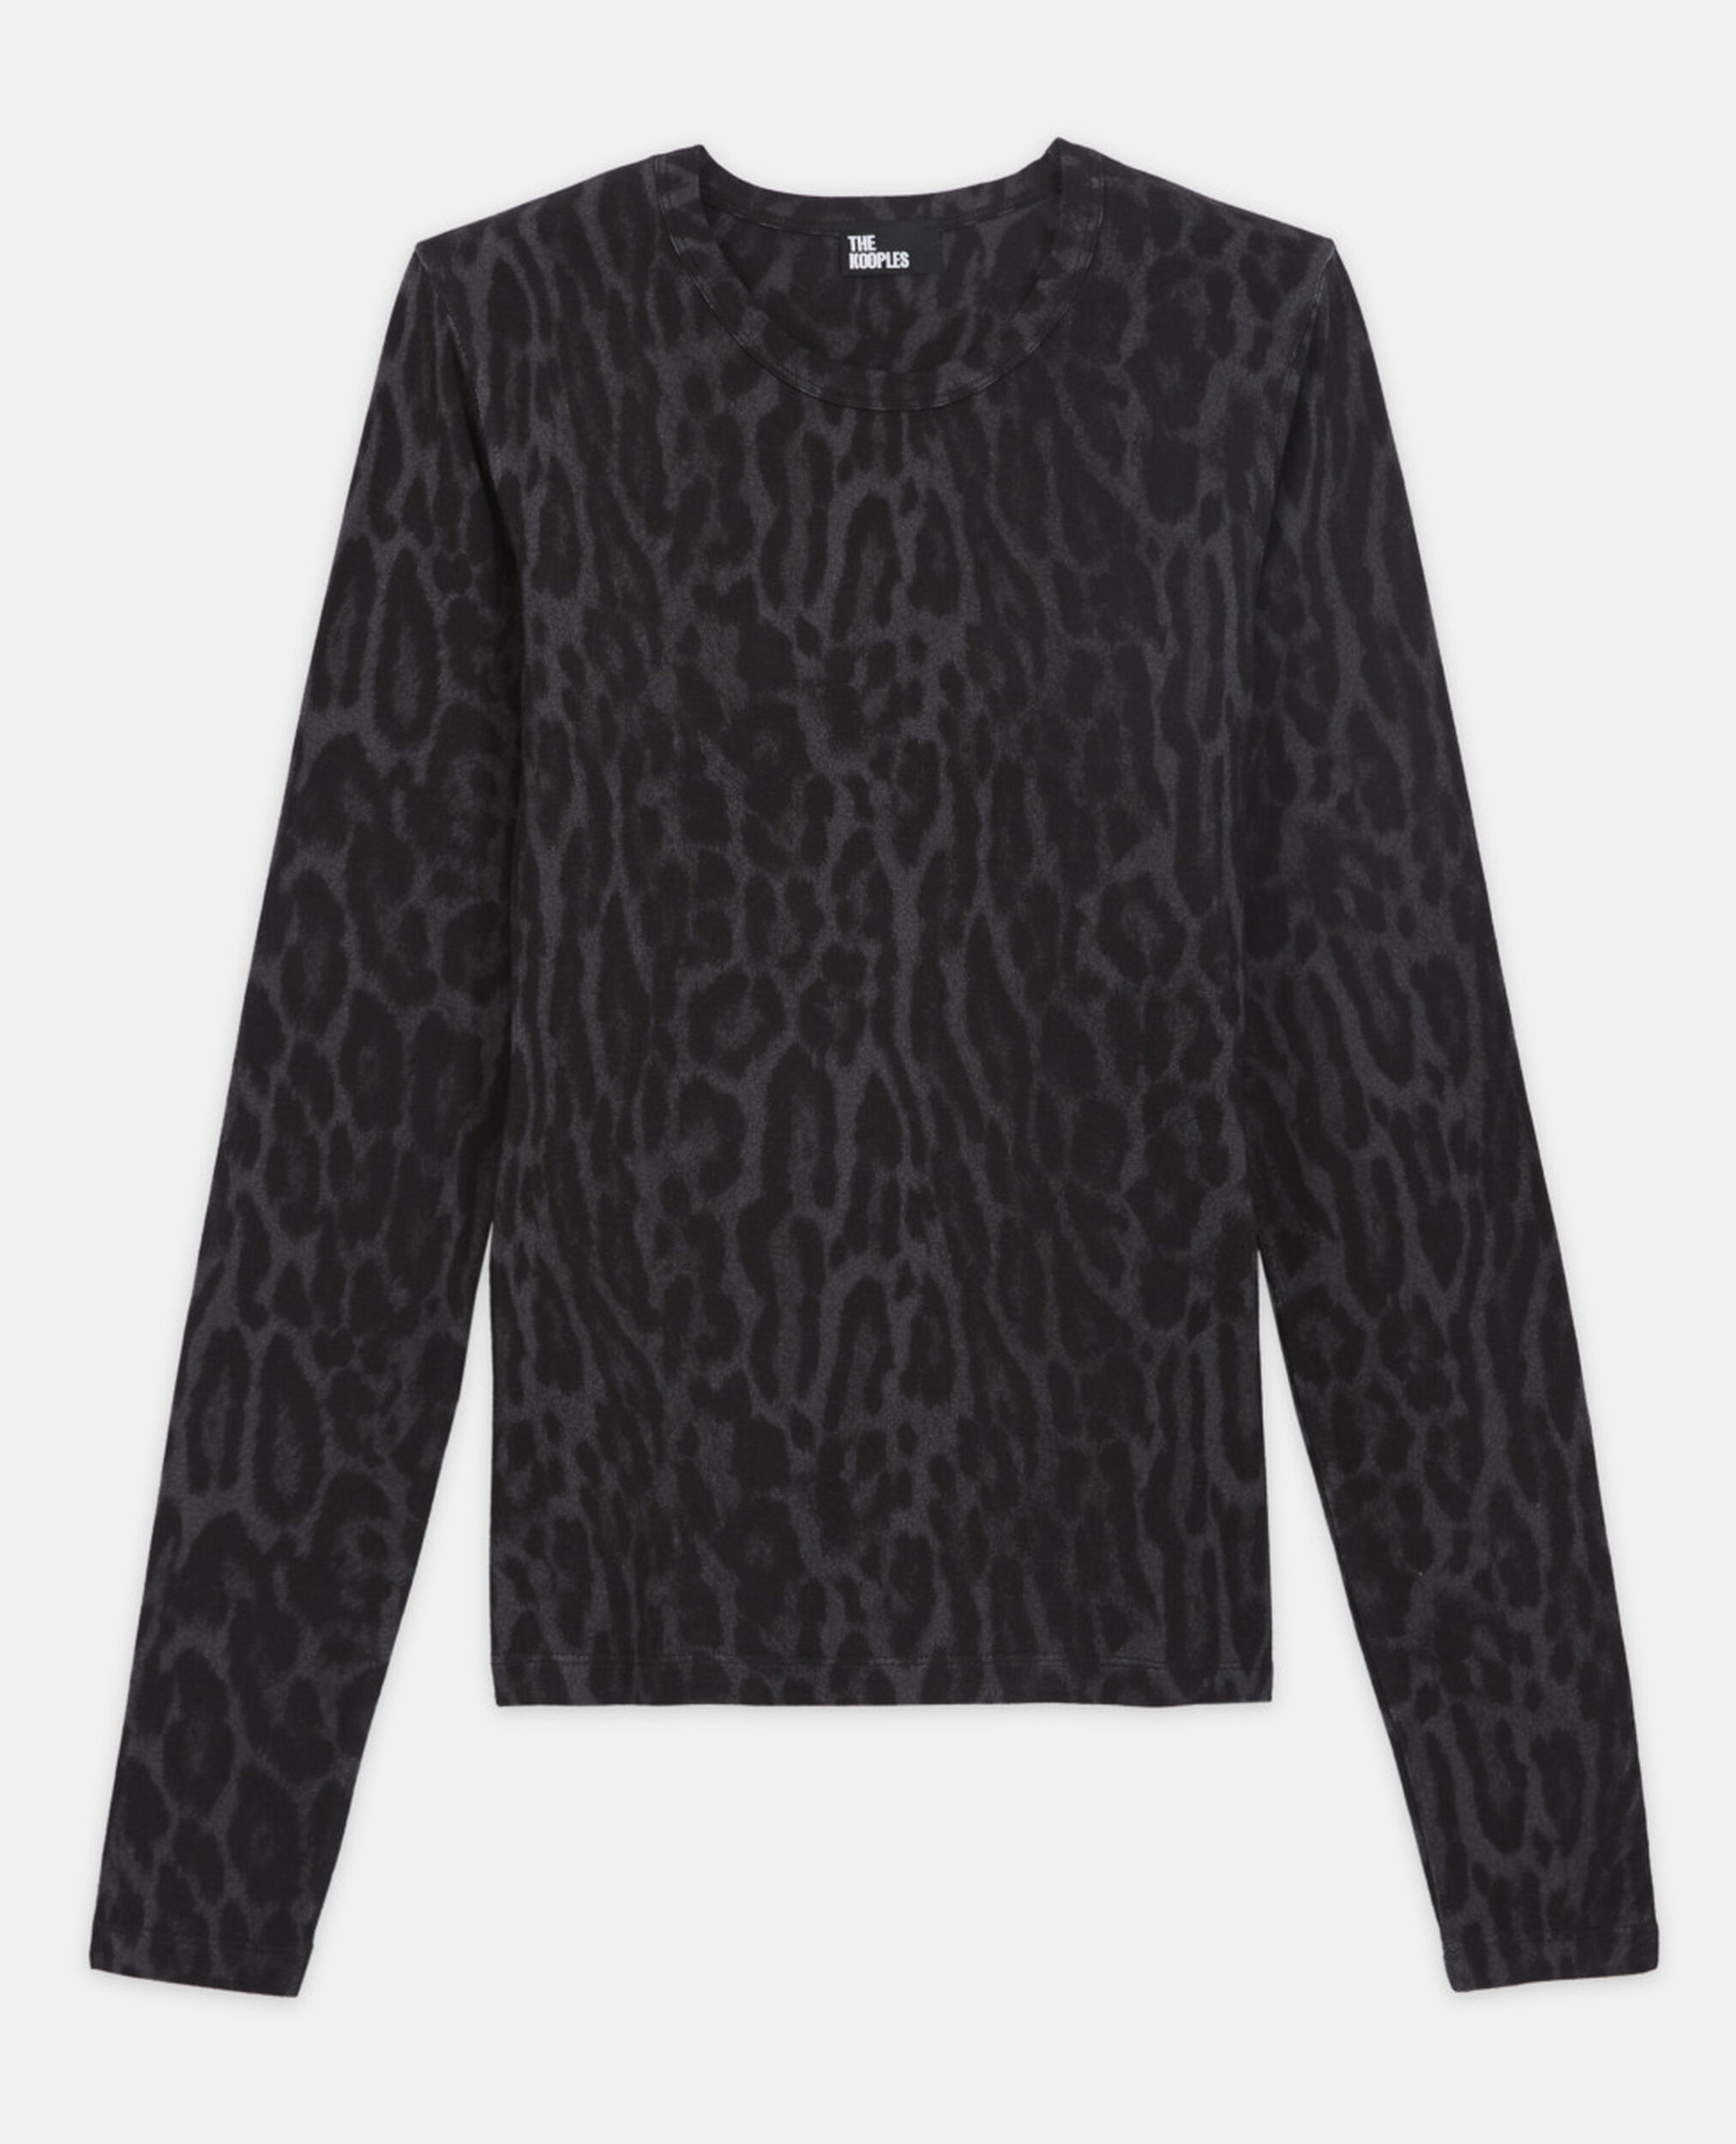 T-shirt en coton léopard gris, BLACK, hi-res image number null